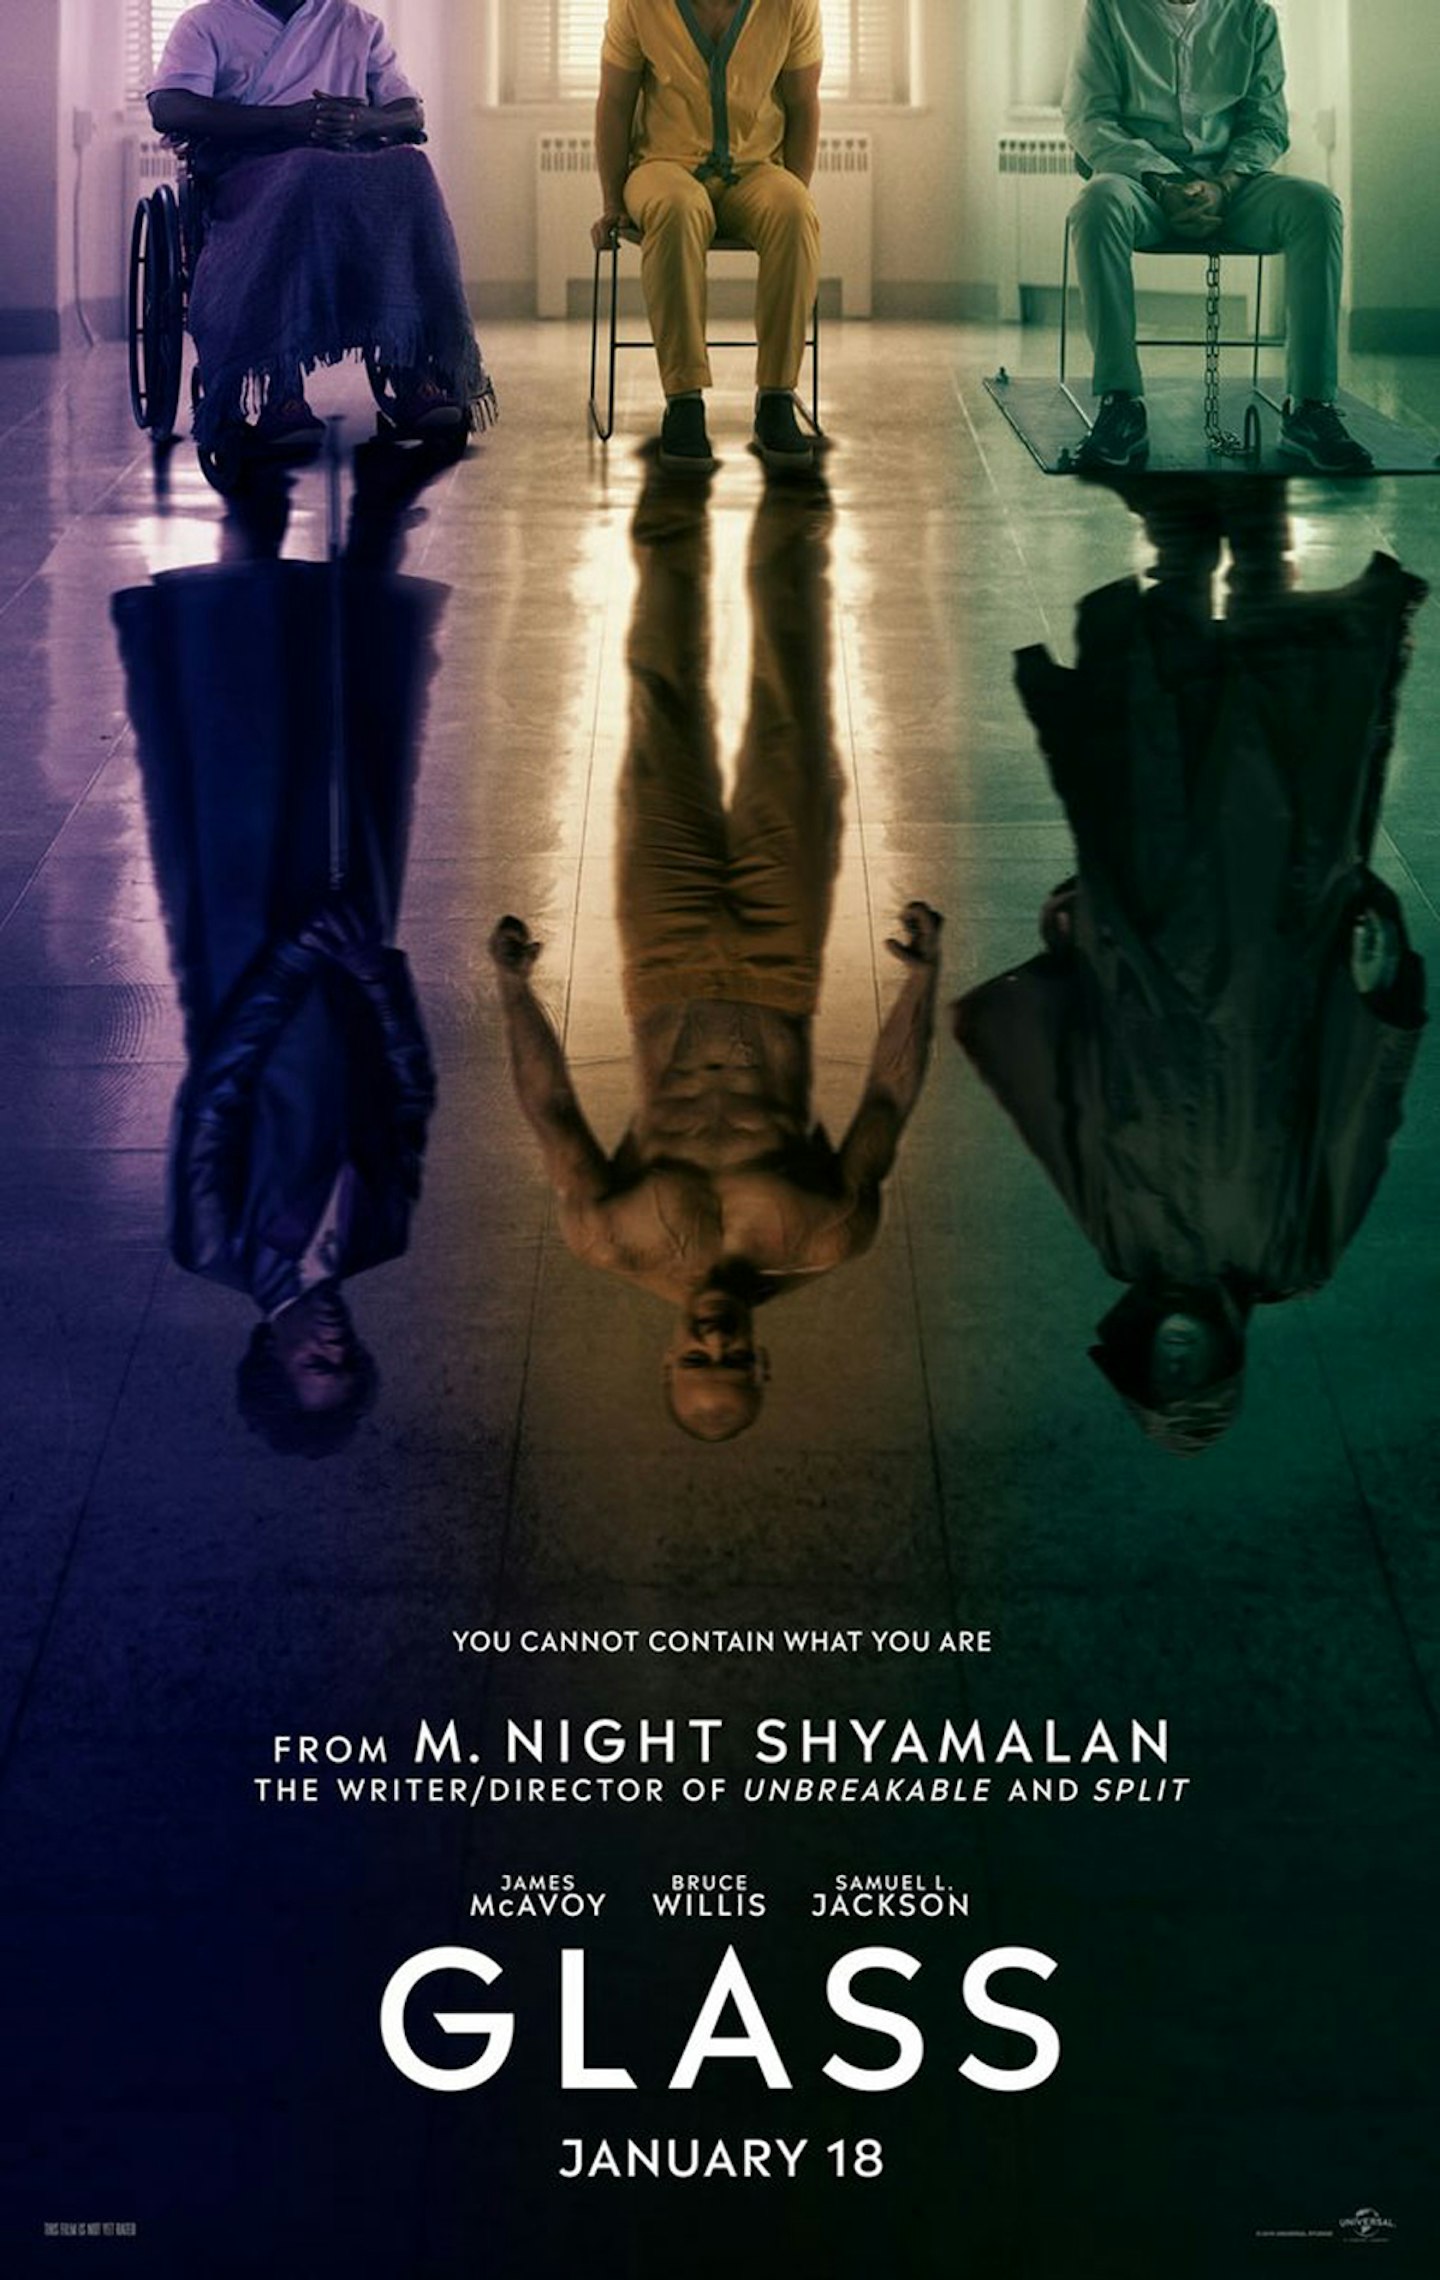 The Real Spoiler in M. Night Shyamalan's “Split”